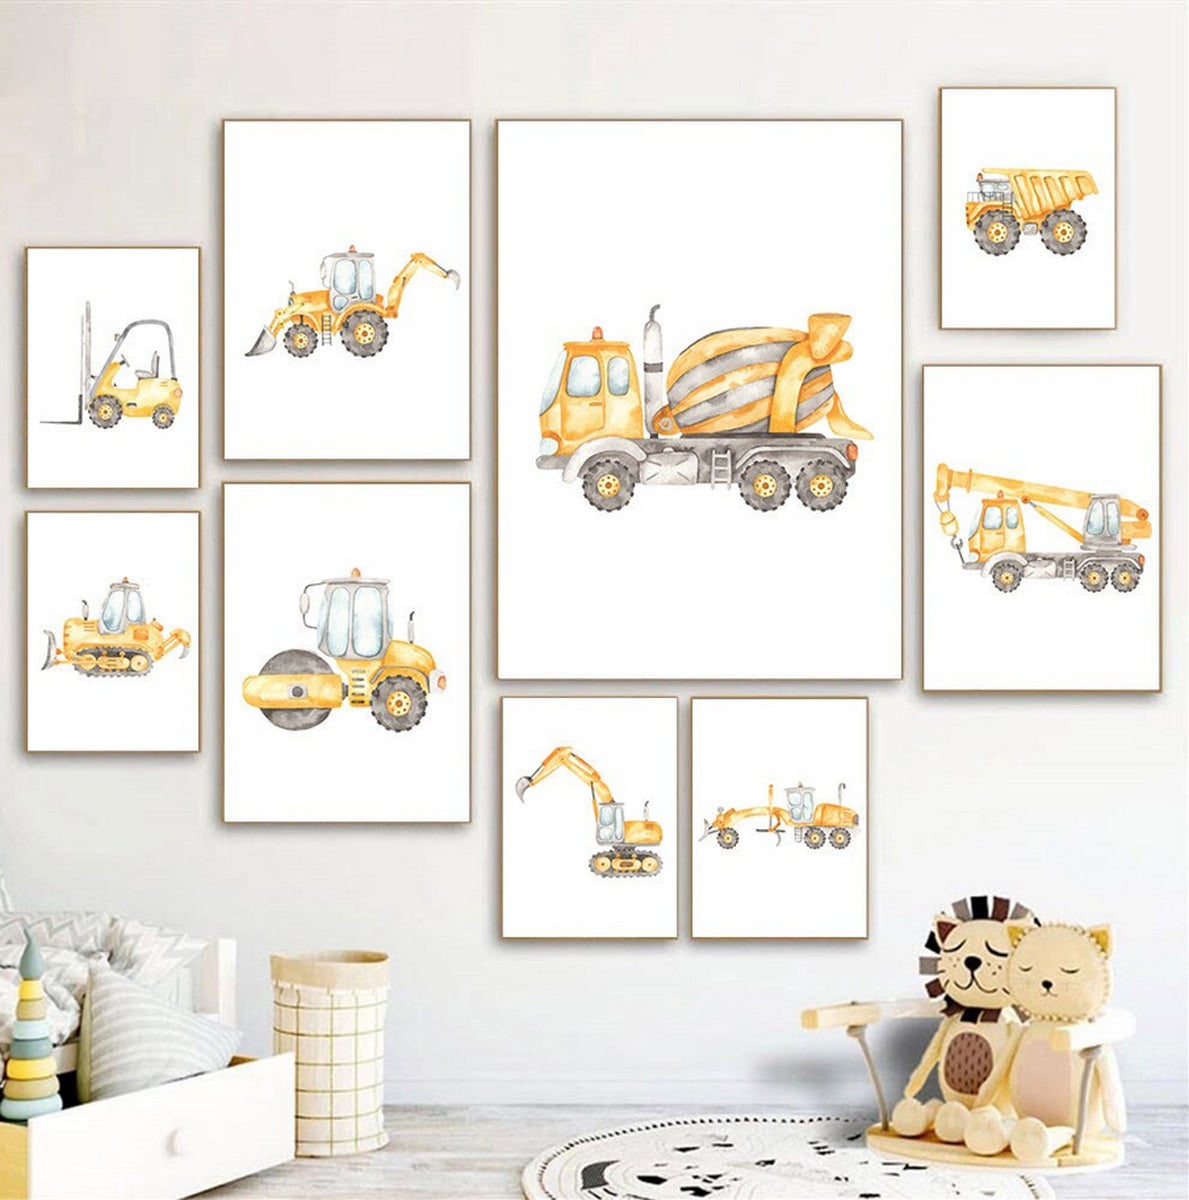 TPFLiving Poster Canvas / Excavator, Steamroller, Truck, Traumpreisfabrik – Truck, Cement